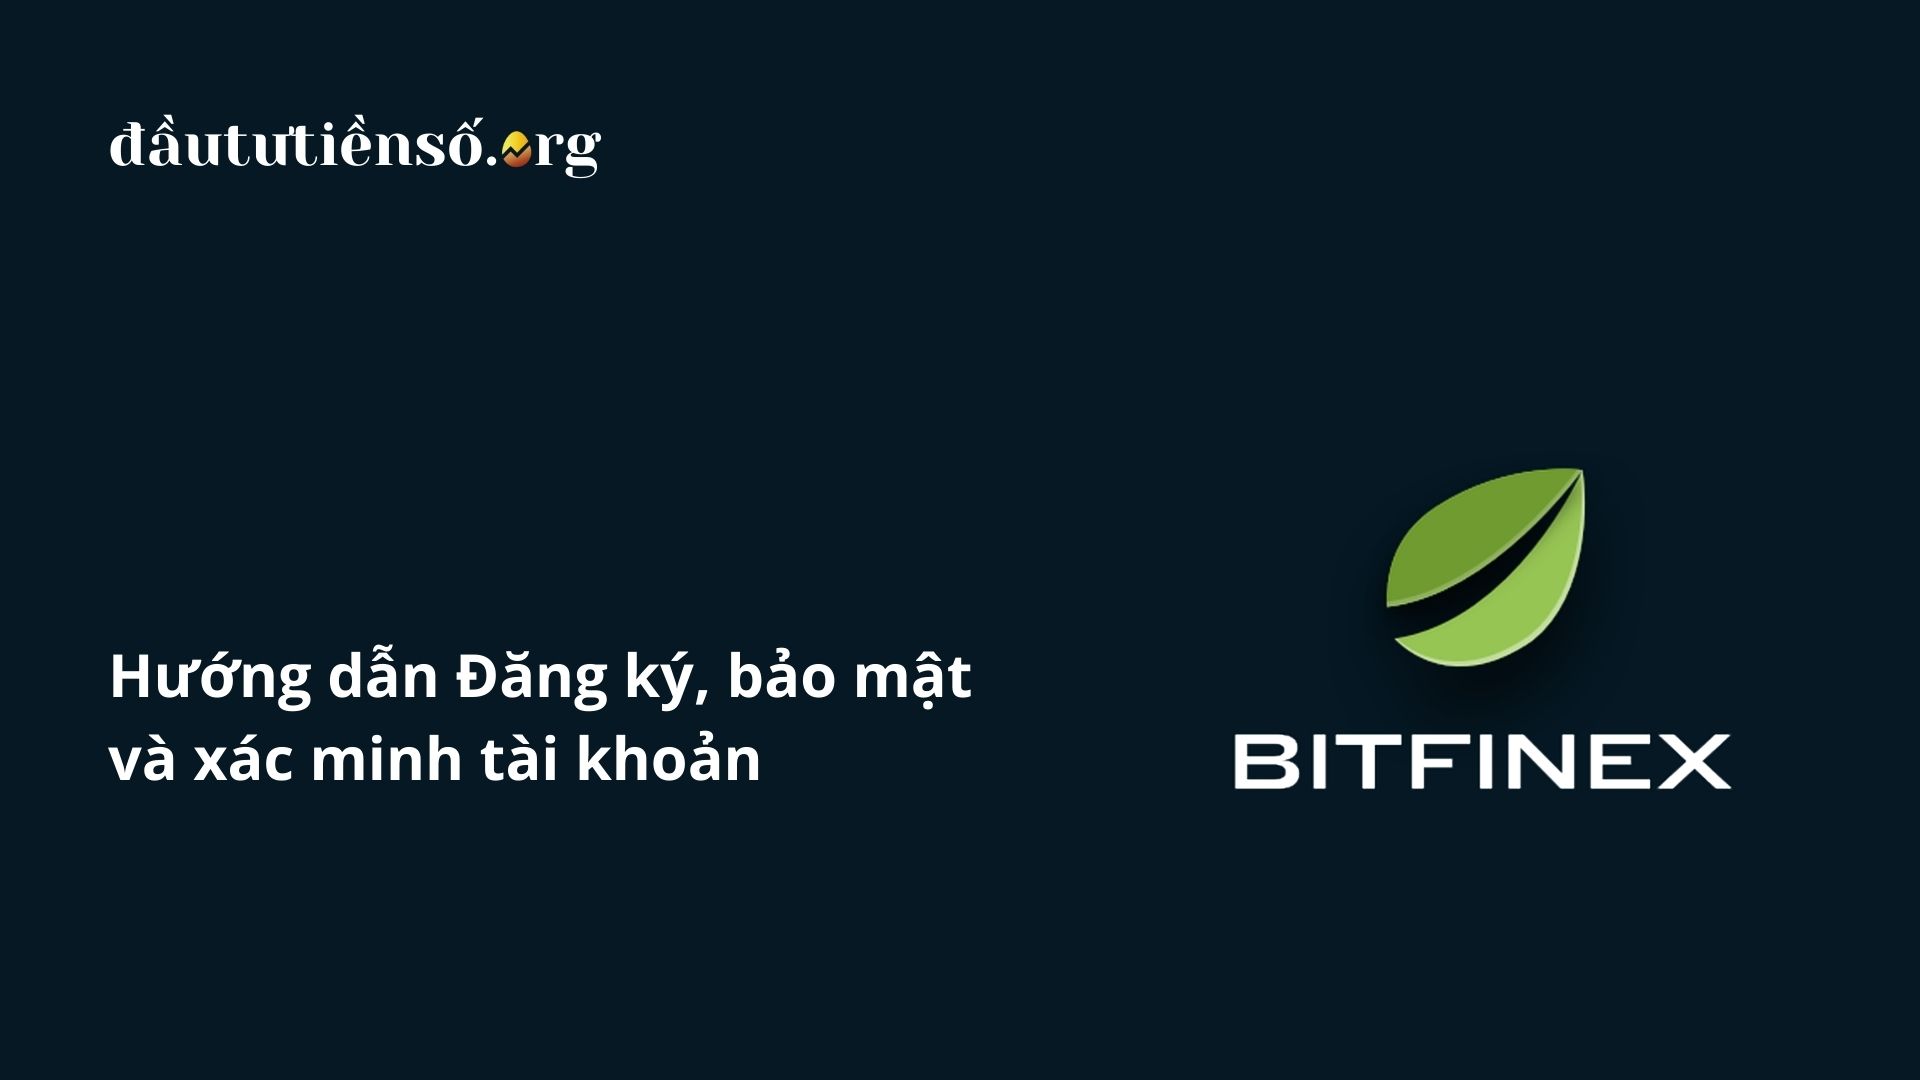 Hướng dẫn đăng ký, bảo mật và xác minh tài khoản Bitfinex